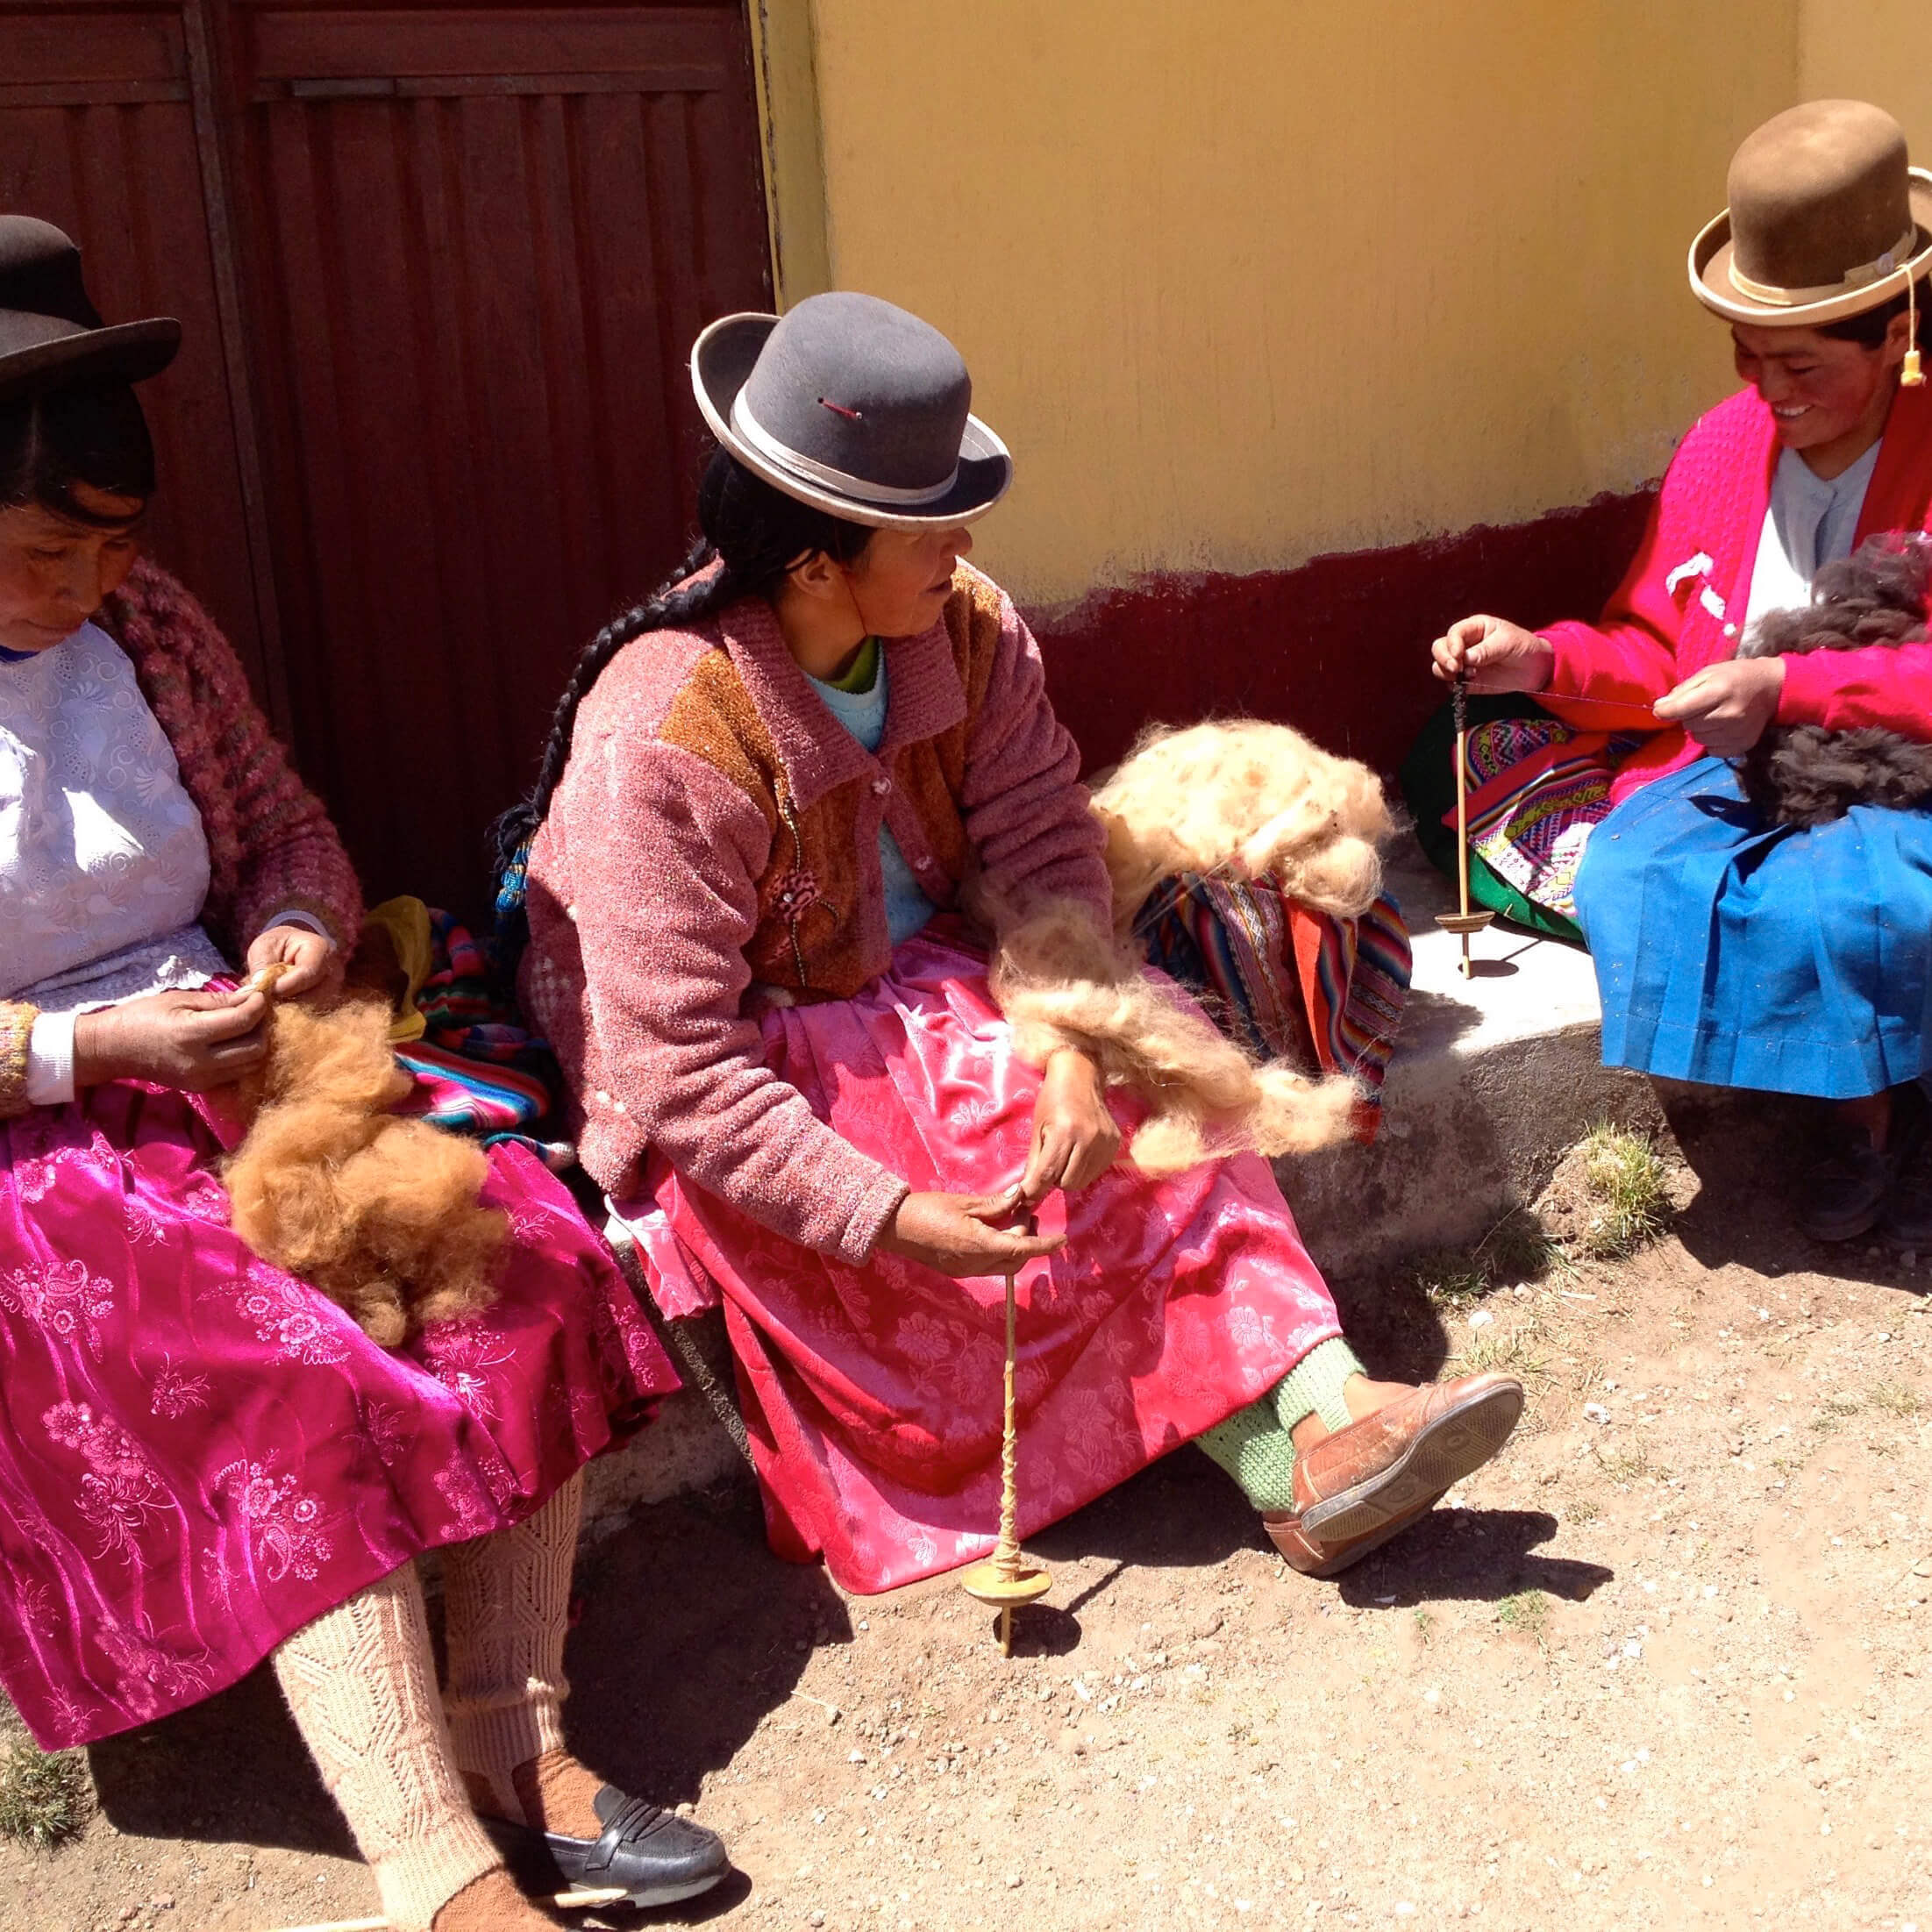 The Alpaca Herding Communities Program